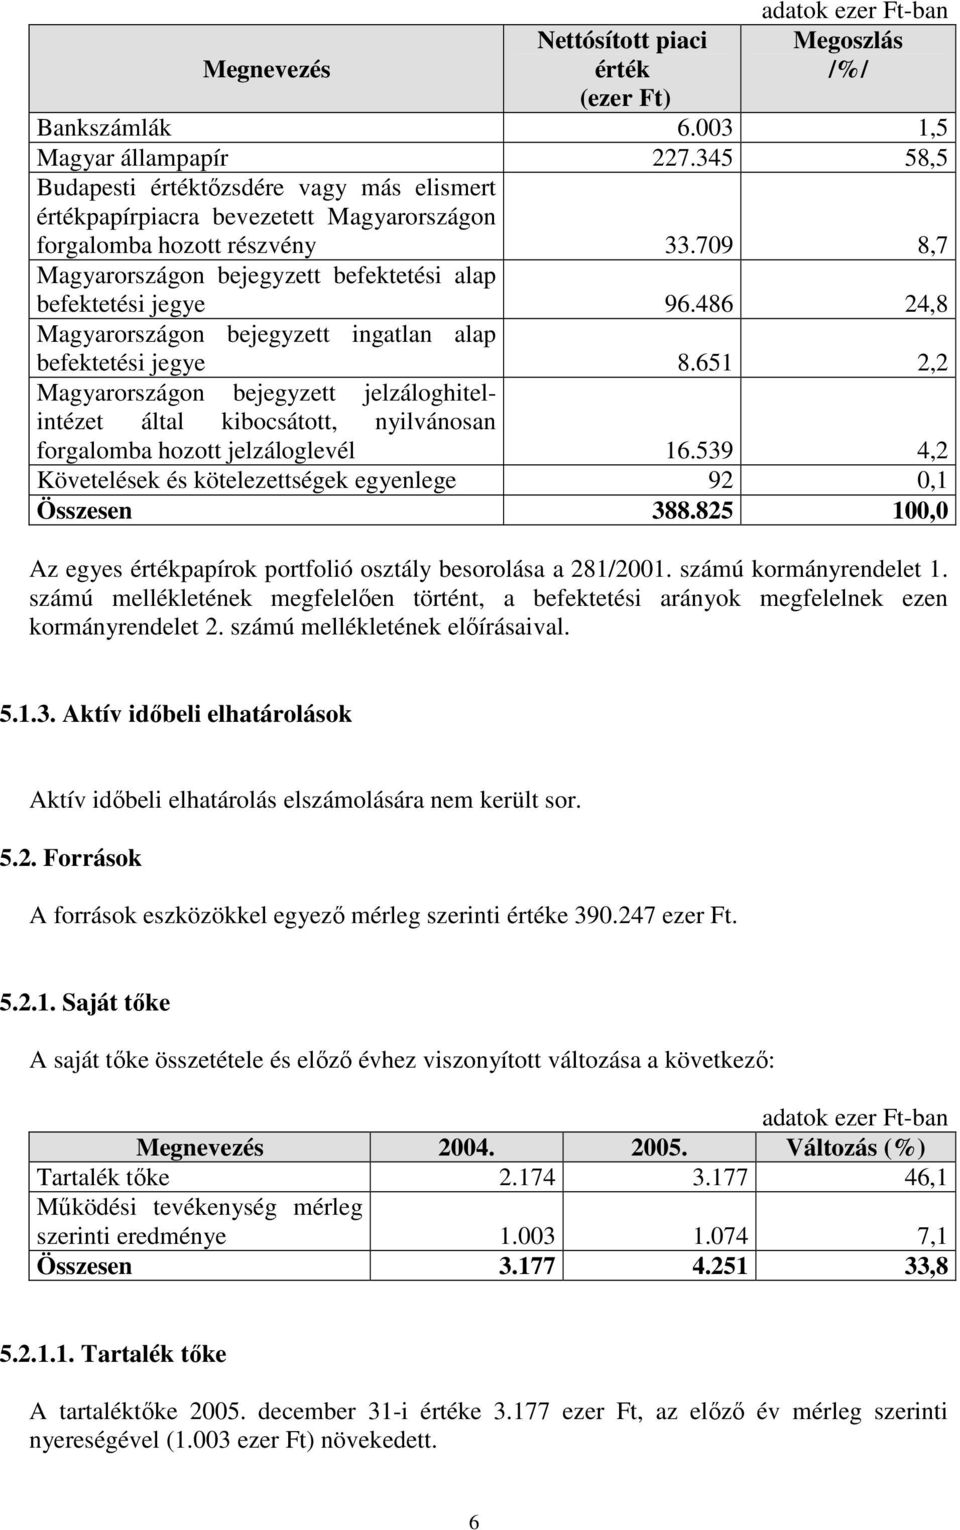 486 24,8 Magyarországon bejegyzett ingatlan alap befektetési jegye 8.651 2,2 Magyarországon bejegyzett jelzáloghitelintézet által kibocsátott, nyilvánosan forgalomba hozott jelzáloglevél 16.